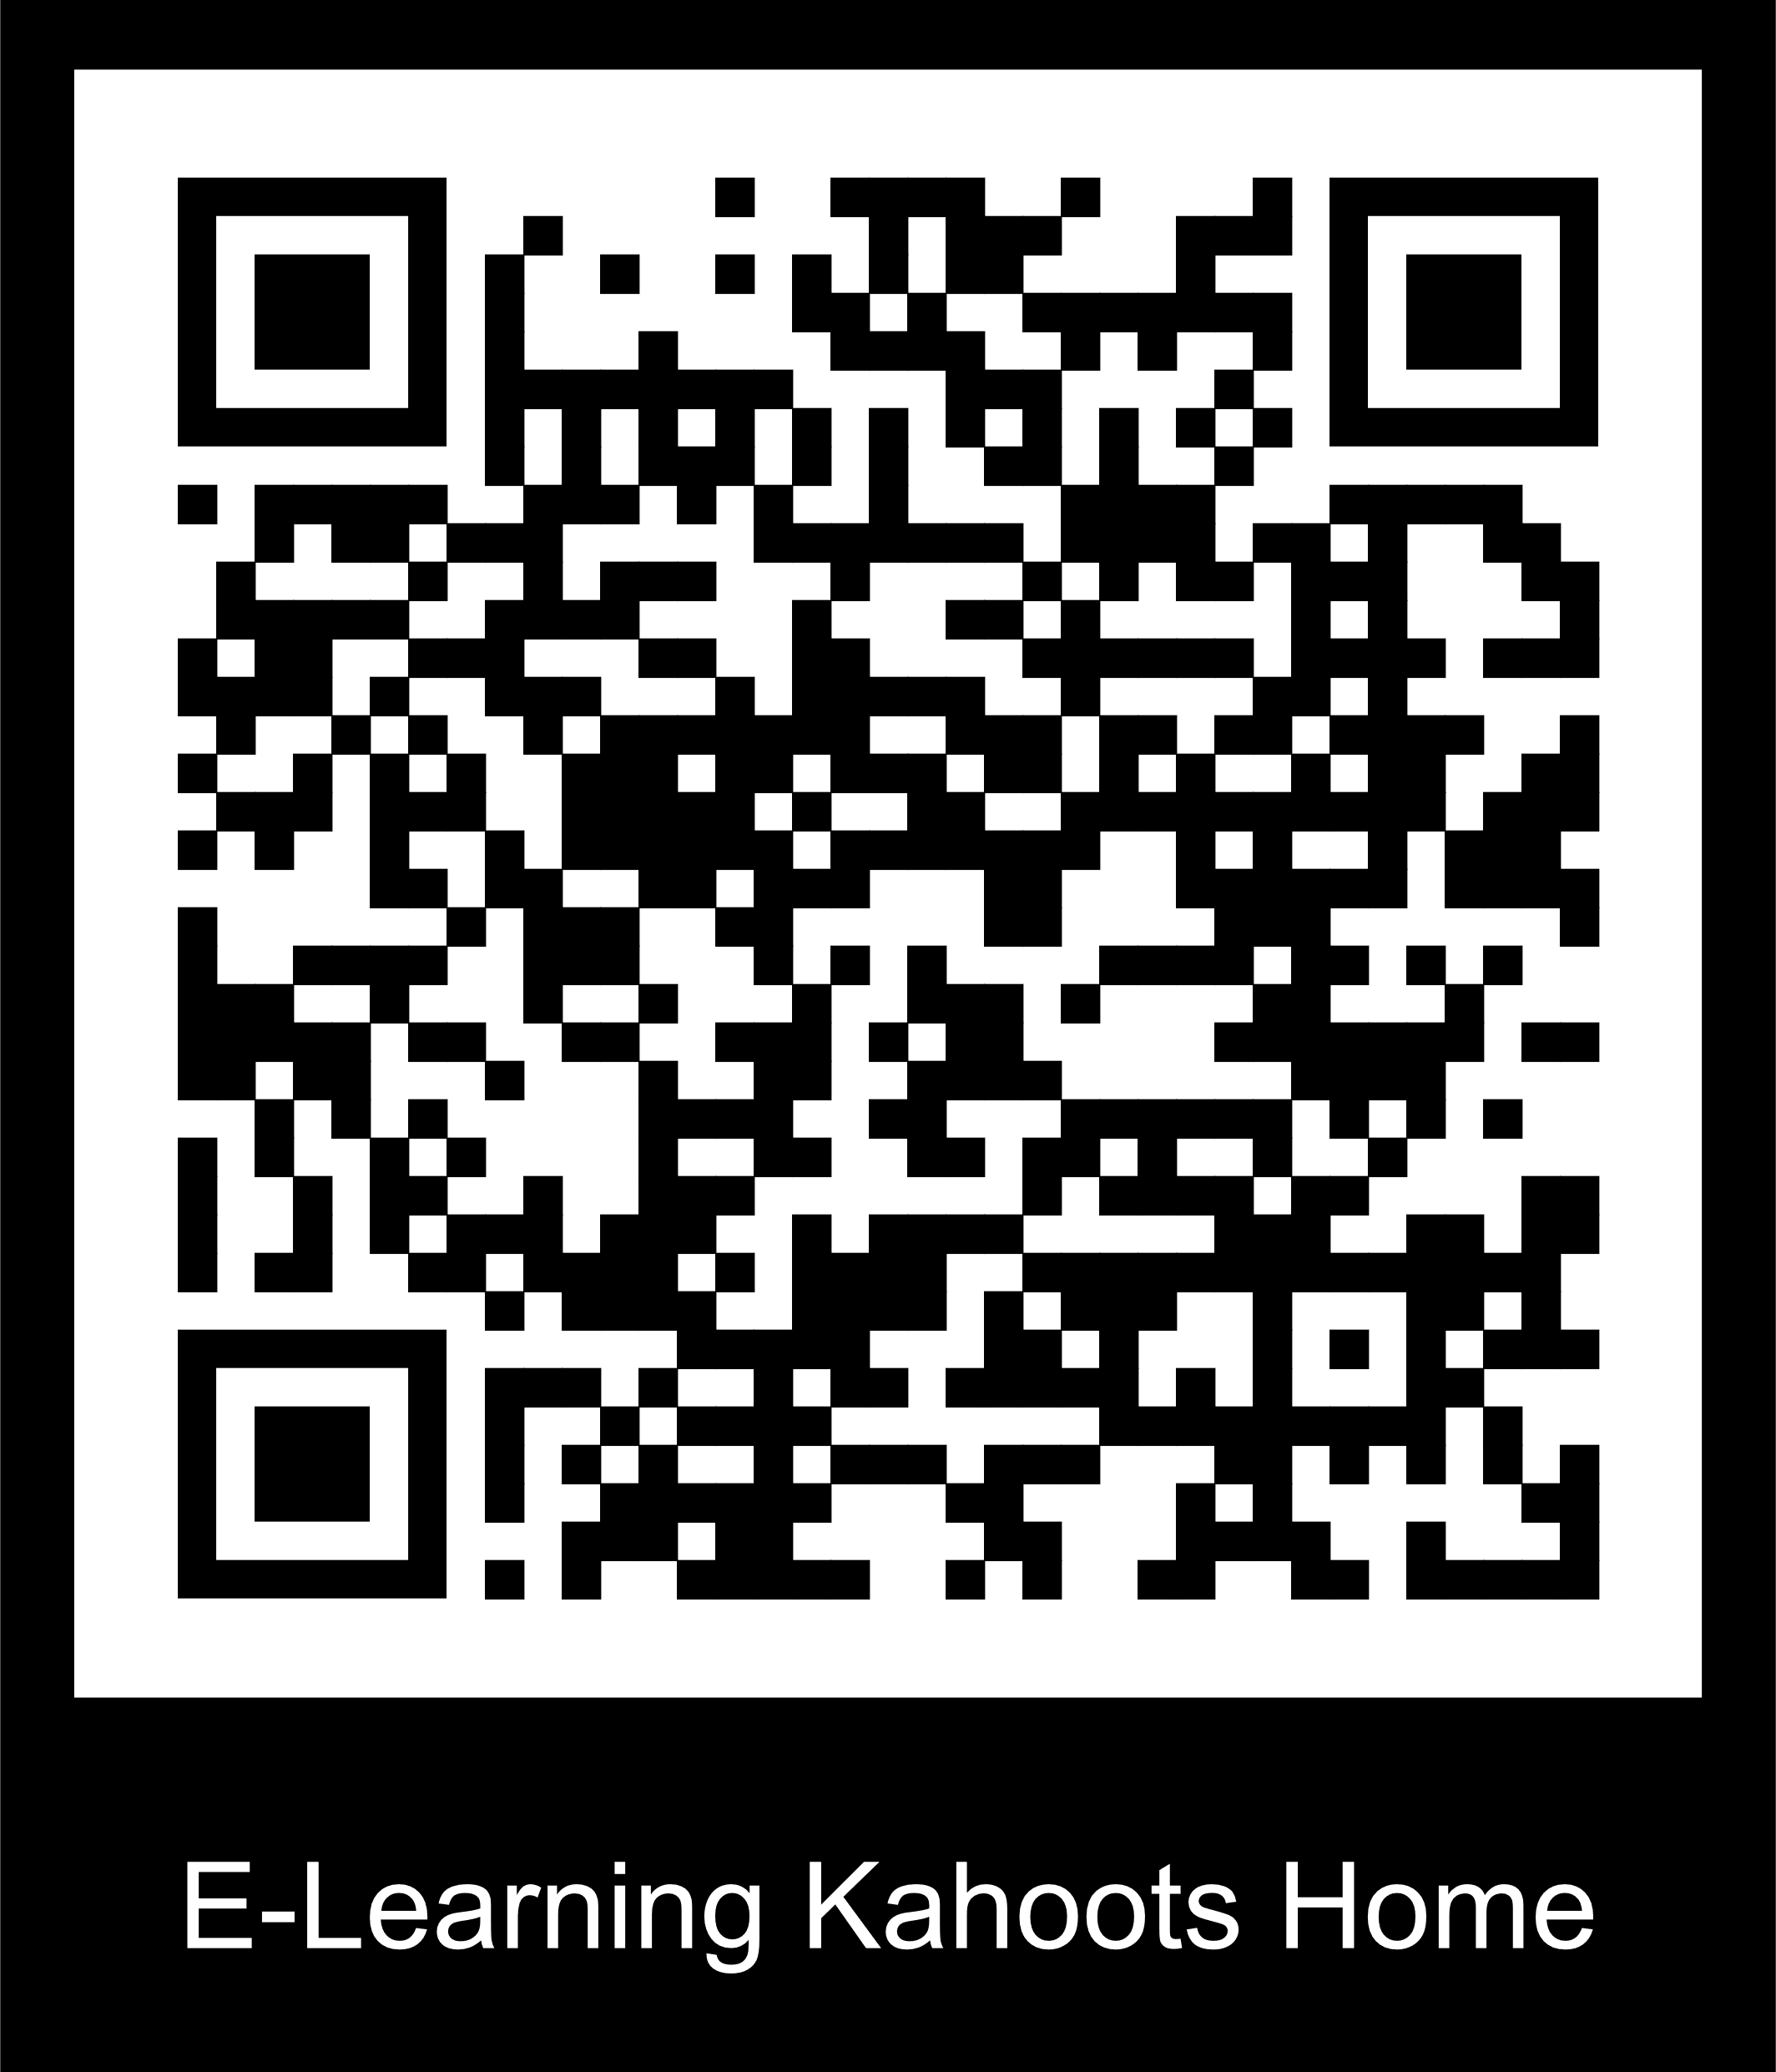 qr-el-kahoots-home